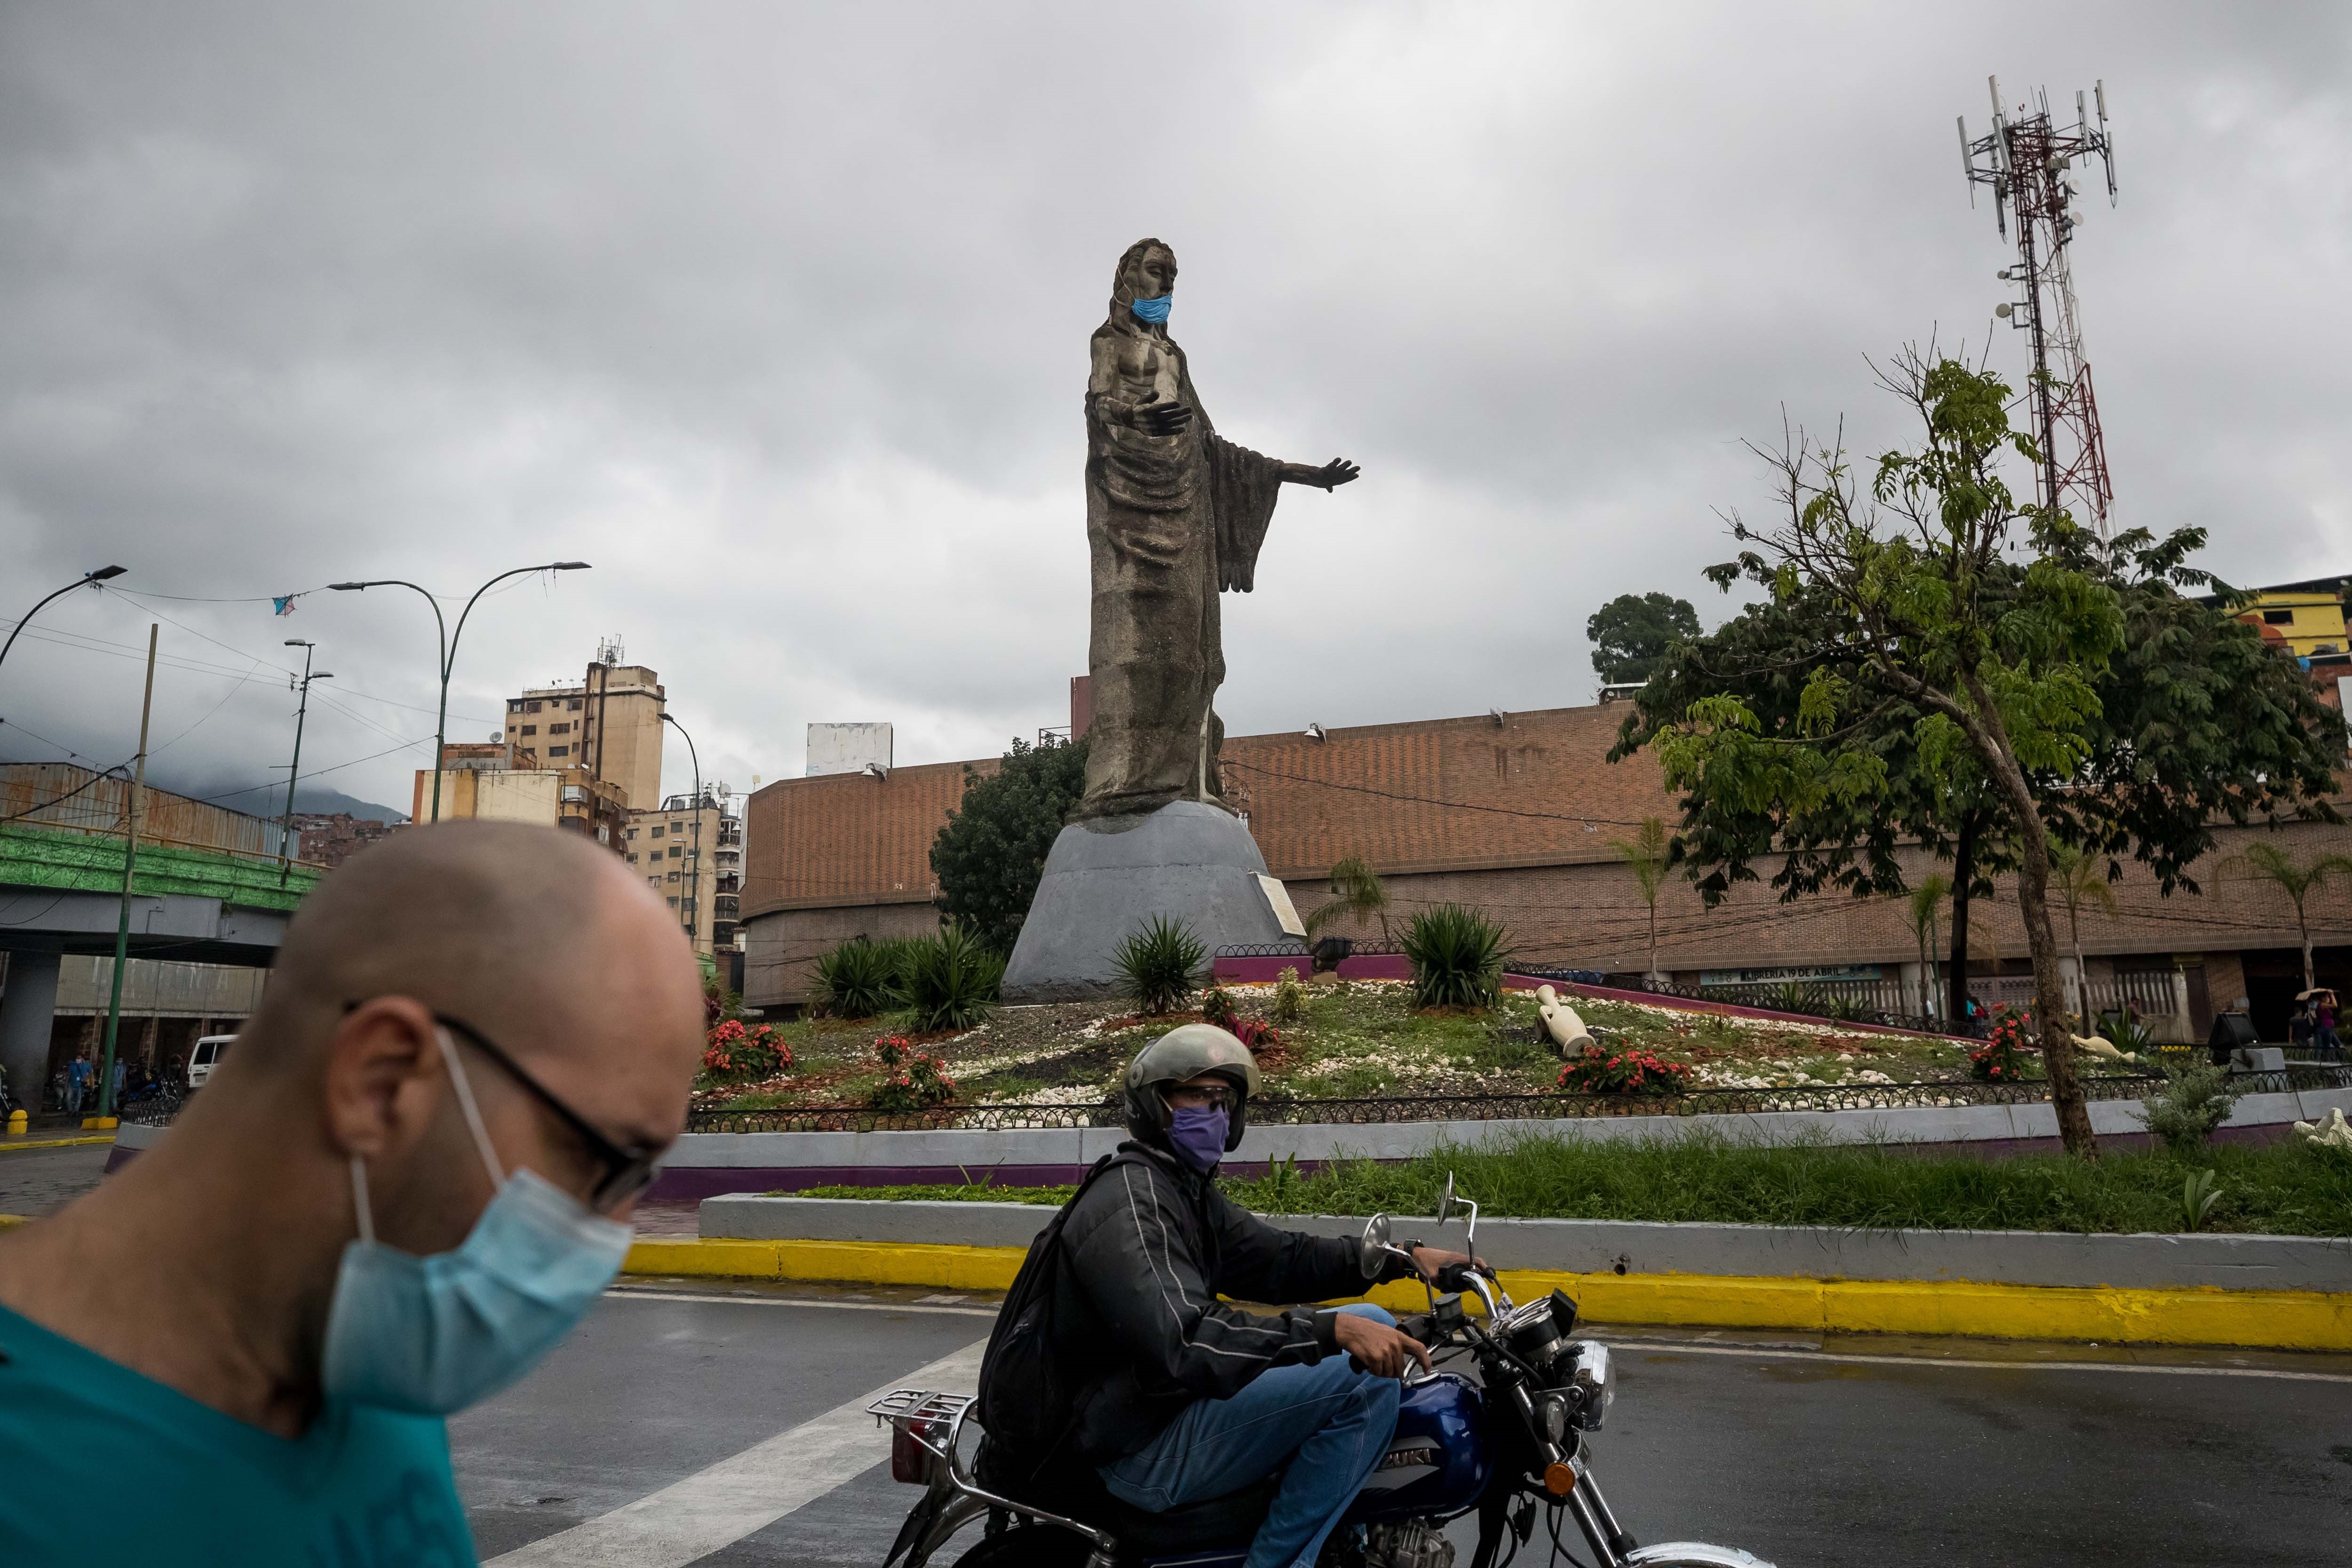 De complot contra China a virus colombiano, la narrativa venezolana del Covid-19